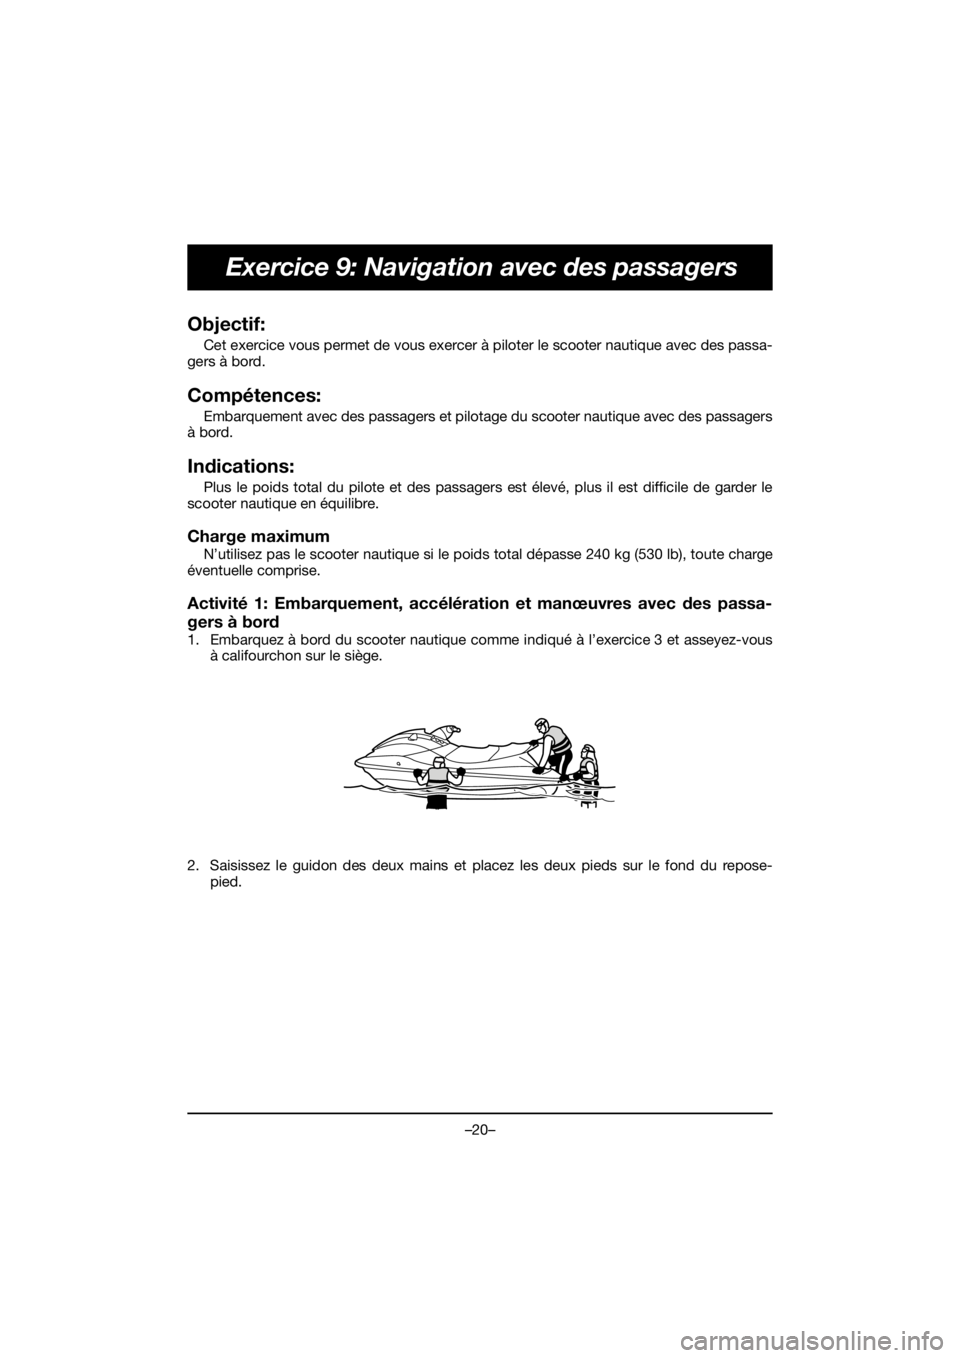 YAMAHA VX CRUISER HO 2019  Manuale duso (in Italian) –20–
Exercice 9: Navigation avec des passagers
Objectif: 
Cet exercice vous permet de vous exercer à piloter le scooter nautique avec des passa-
gers à bord.
Compétences: 
Embarquement avec des